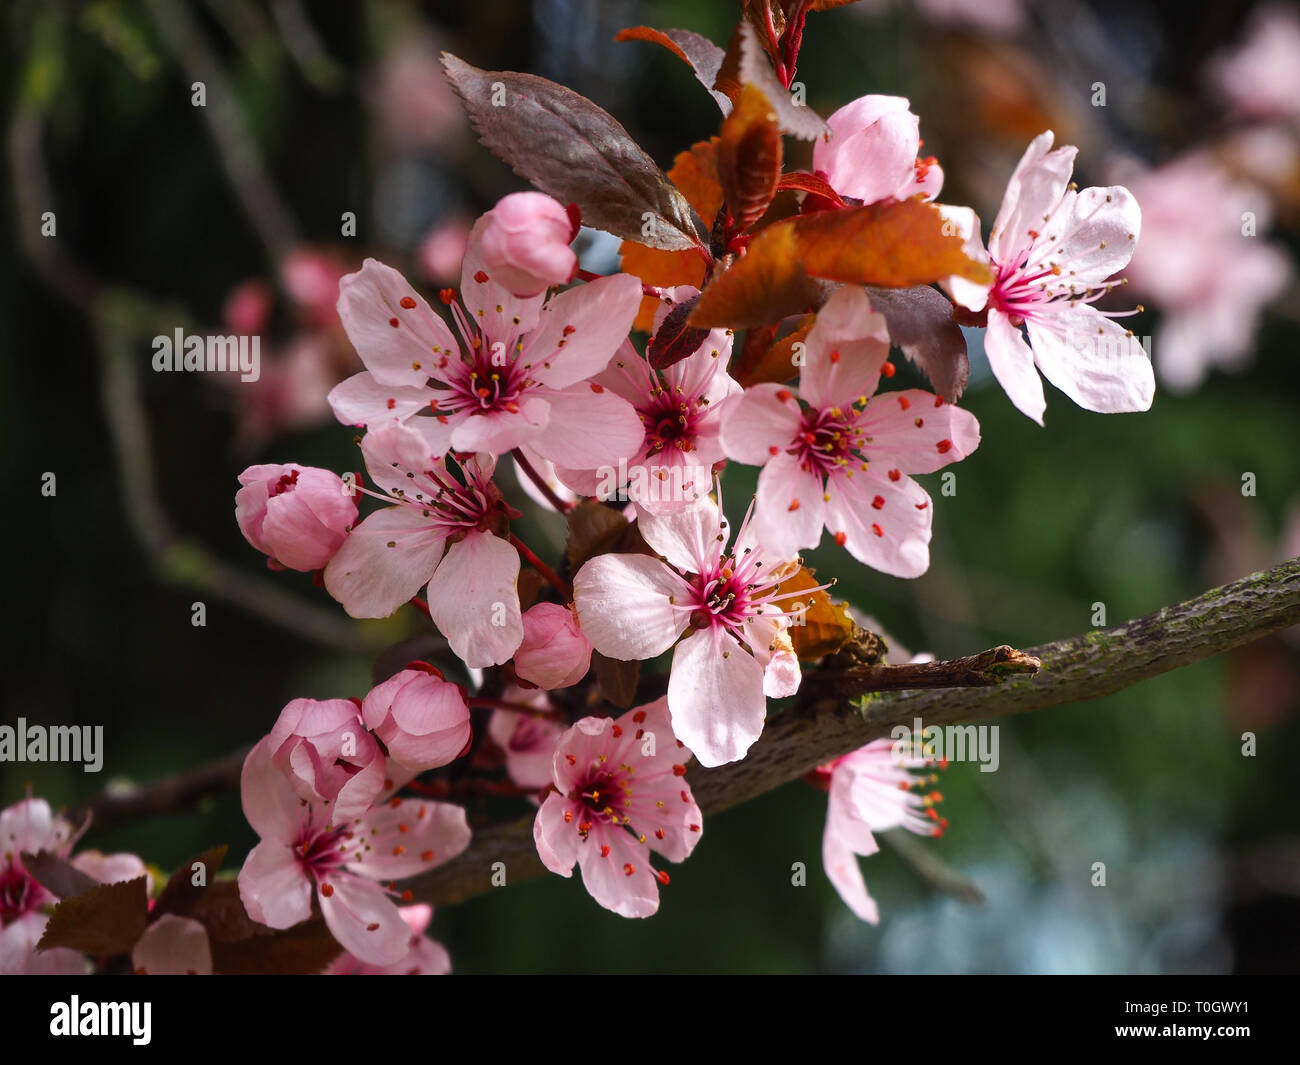 Gros plan du Fleur de cerisier rose sur une branche d'arbre au printemps Banque D'Images